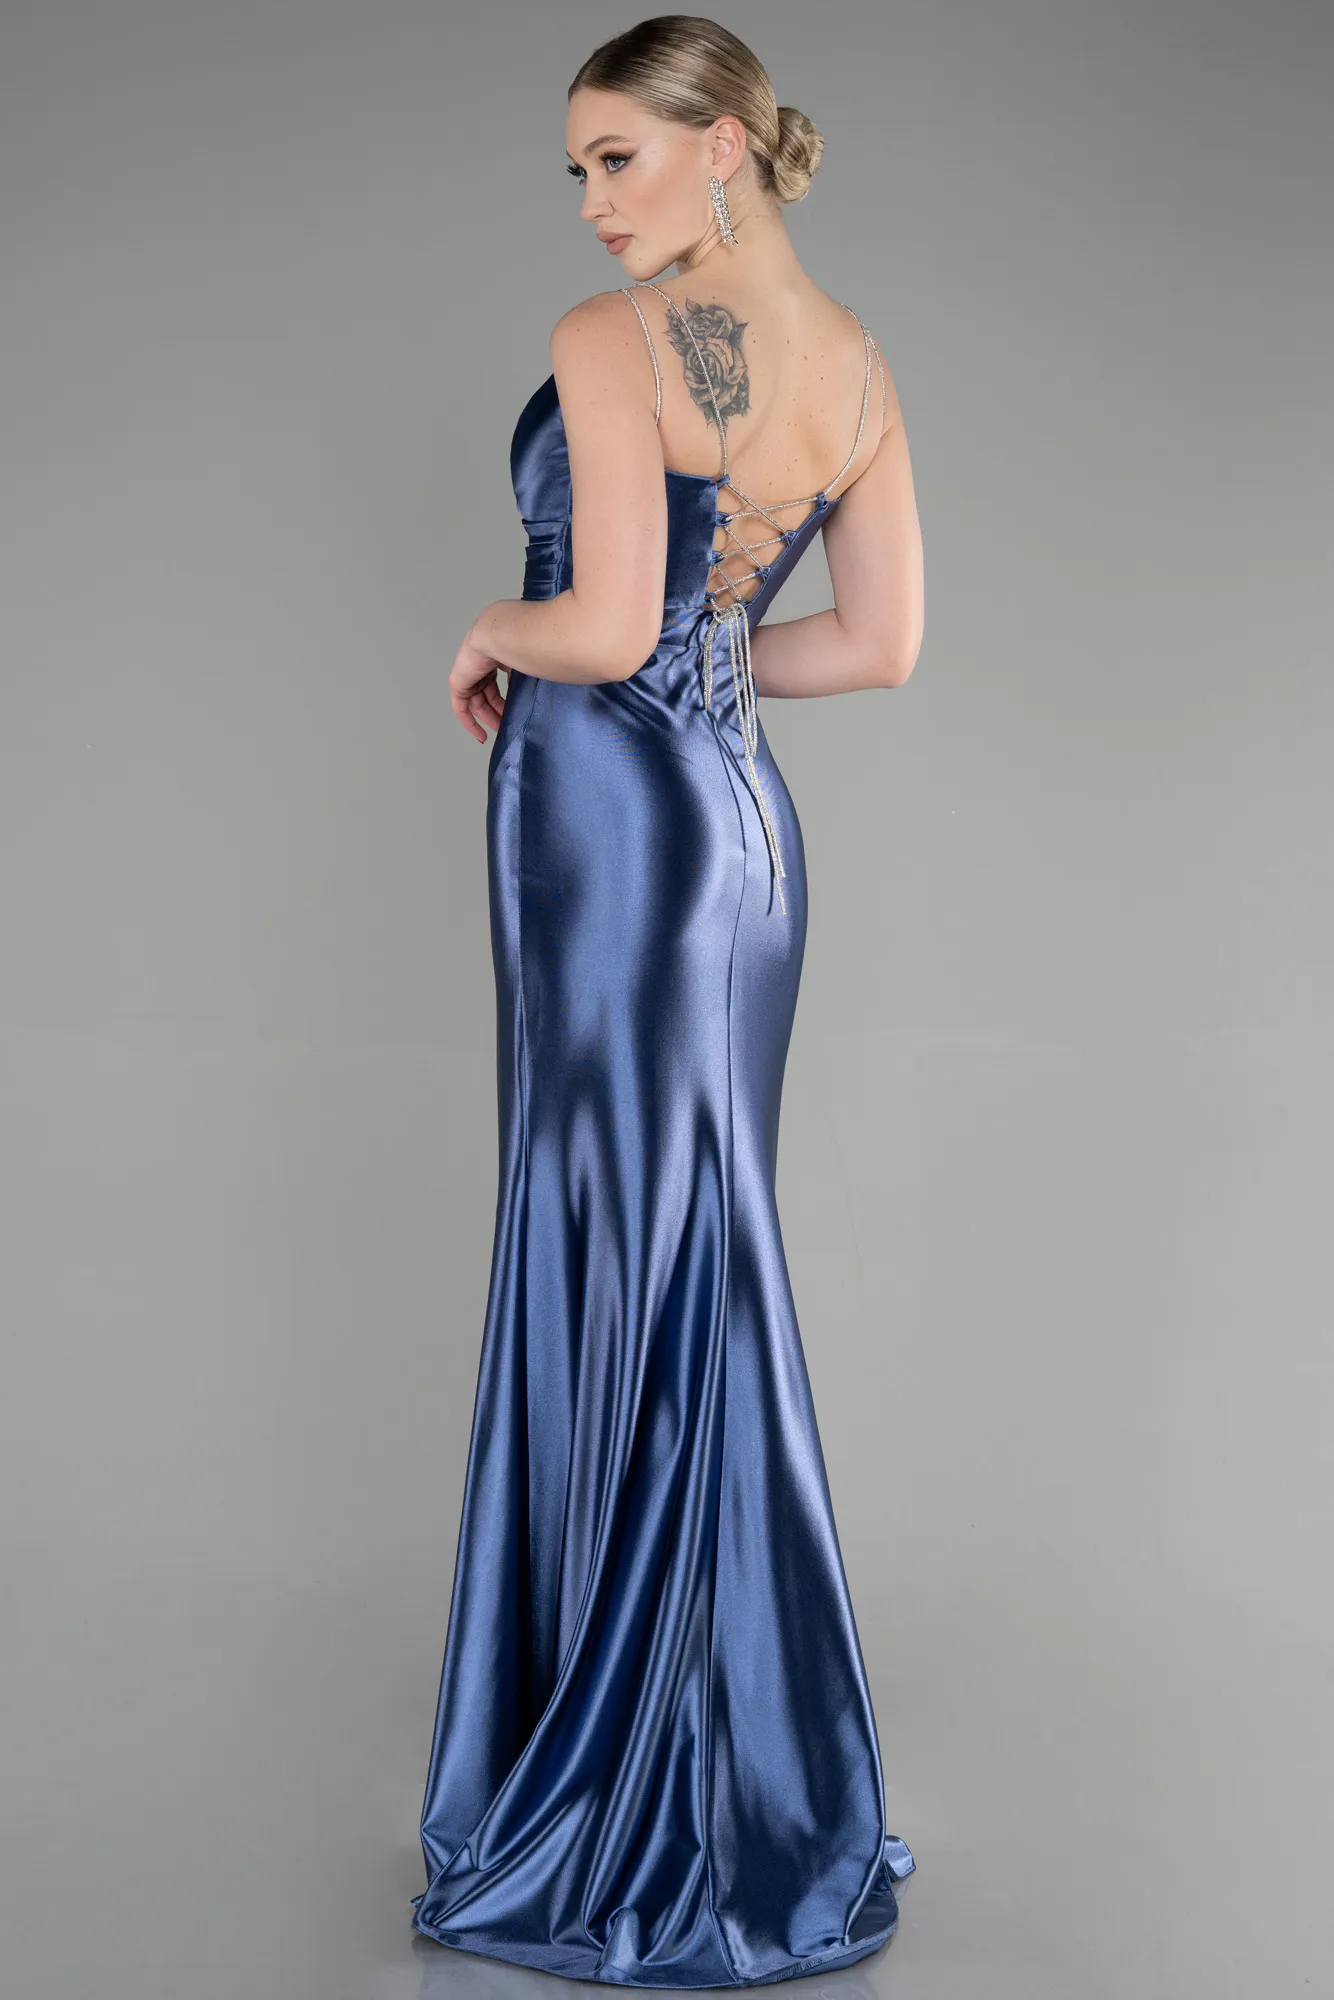 Indigo-Long Mermaid Evening Gown ABU3575